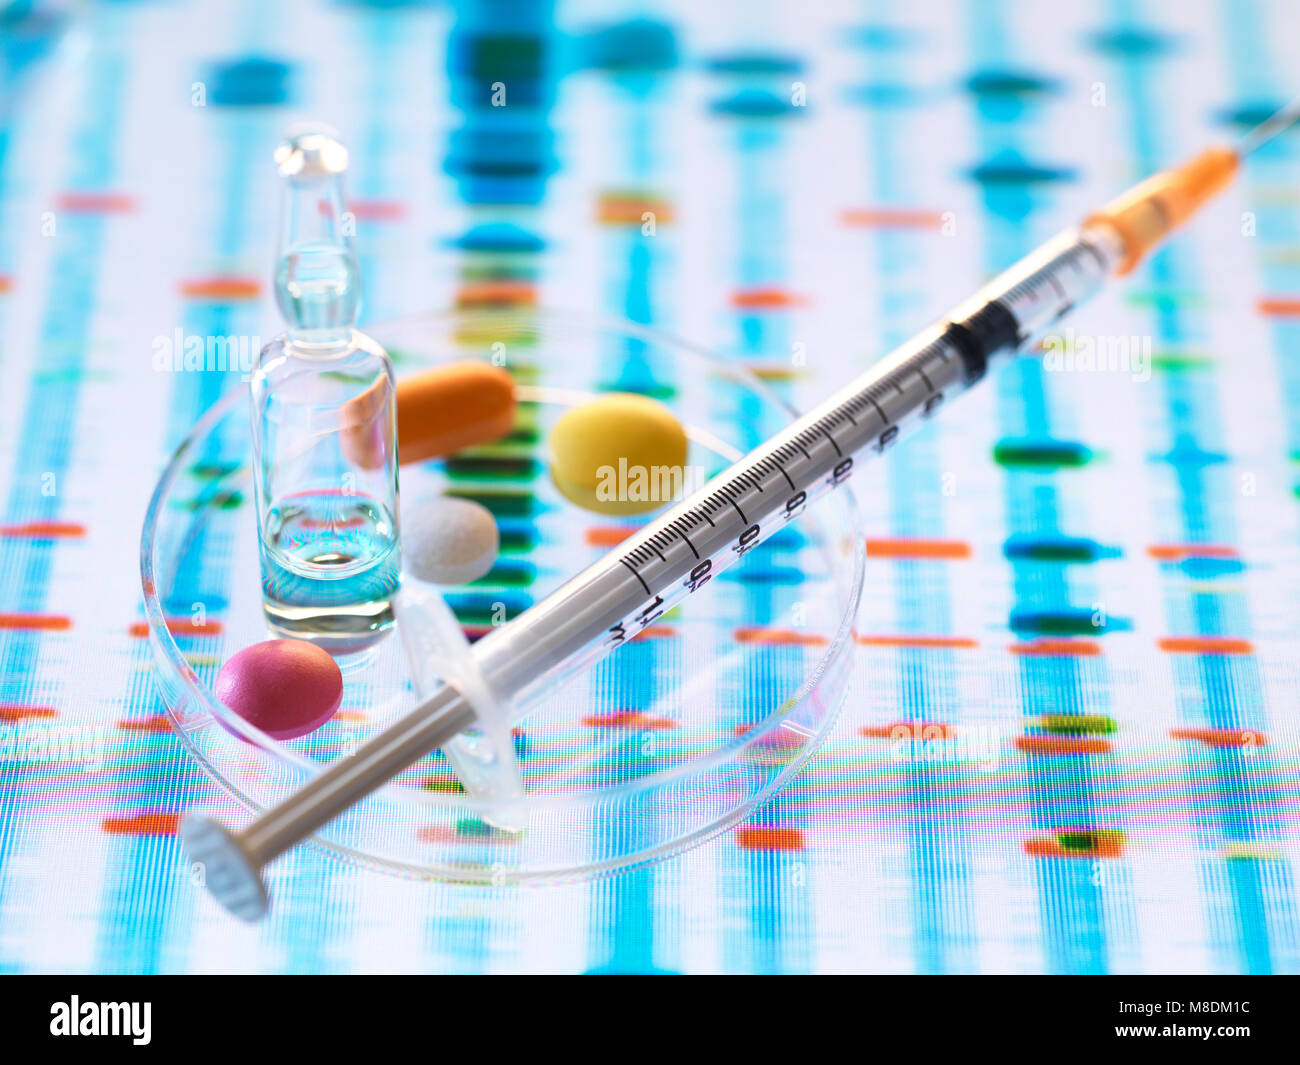 Développement de la recherche pharmaceutique, de la médecine la médecine génétique conçu pour guérir la santé des personnes par l'analyse de l'ADN Banque D'Images